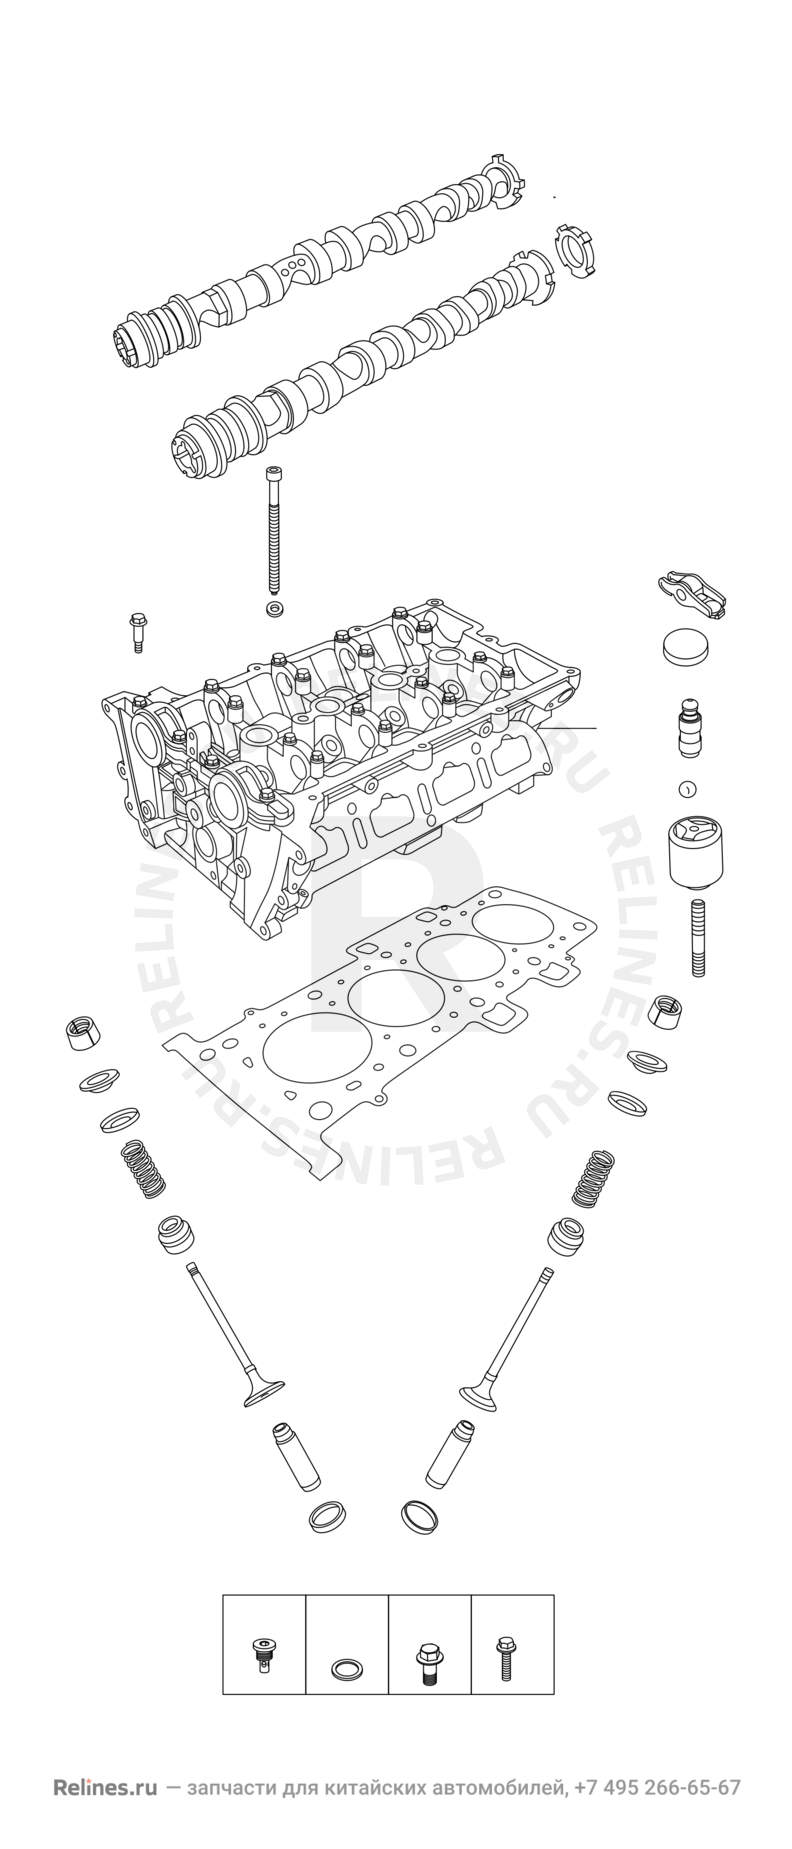 Запчасти Chery Tiggo 4 Поколение I — рестайлинг (2018)  — Головка блока цилиндров — схема